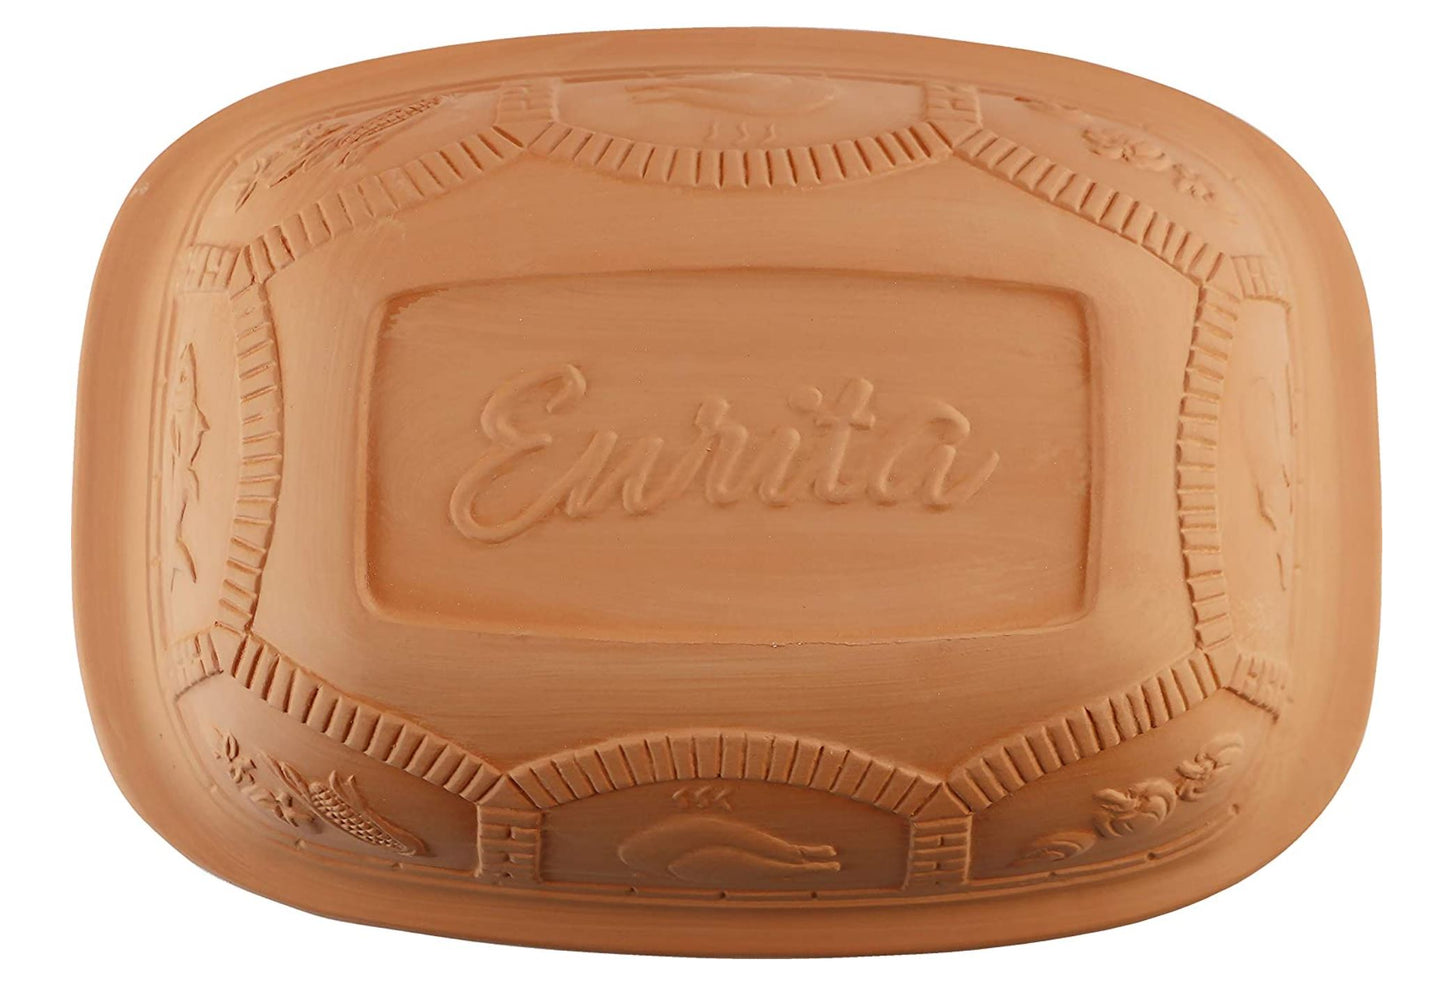 Eurita Clay Cooking Pot and Roaster - 6.25 Quart